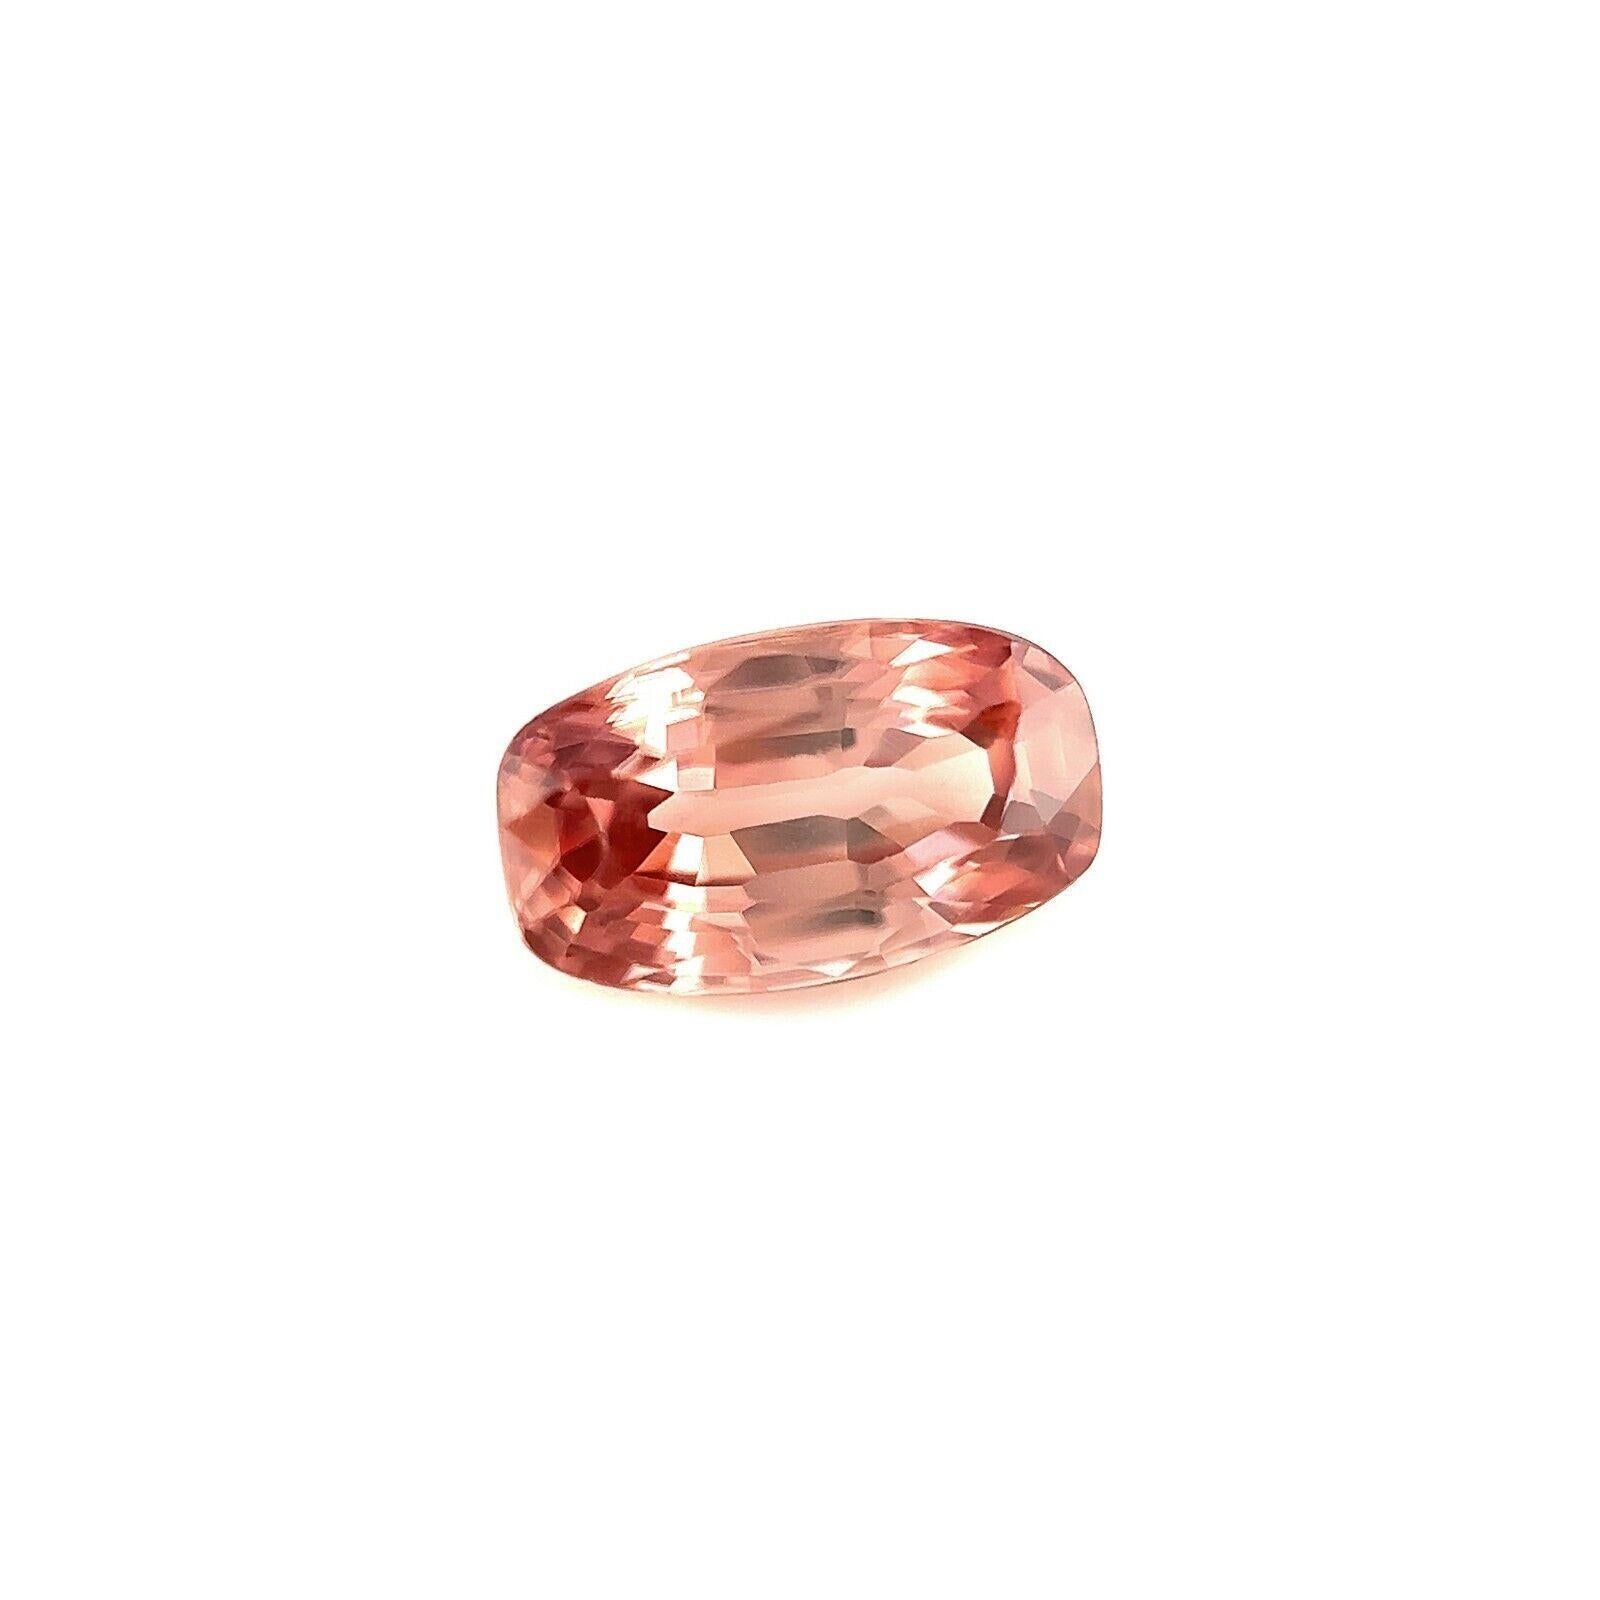 Pierre précieuse naturelle en zircon rose fin.

1,92 carat d'une belle couleur rose et d'une excellente clarté, VVS.

Il est également doté d'une excellente coupe en coussin et d'un polissage qui lui confère une grande brillance et une belle